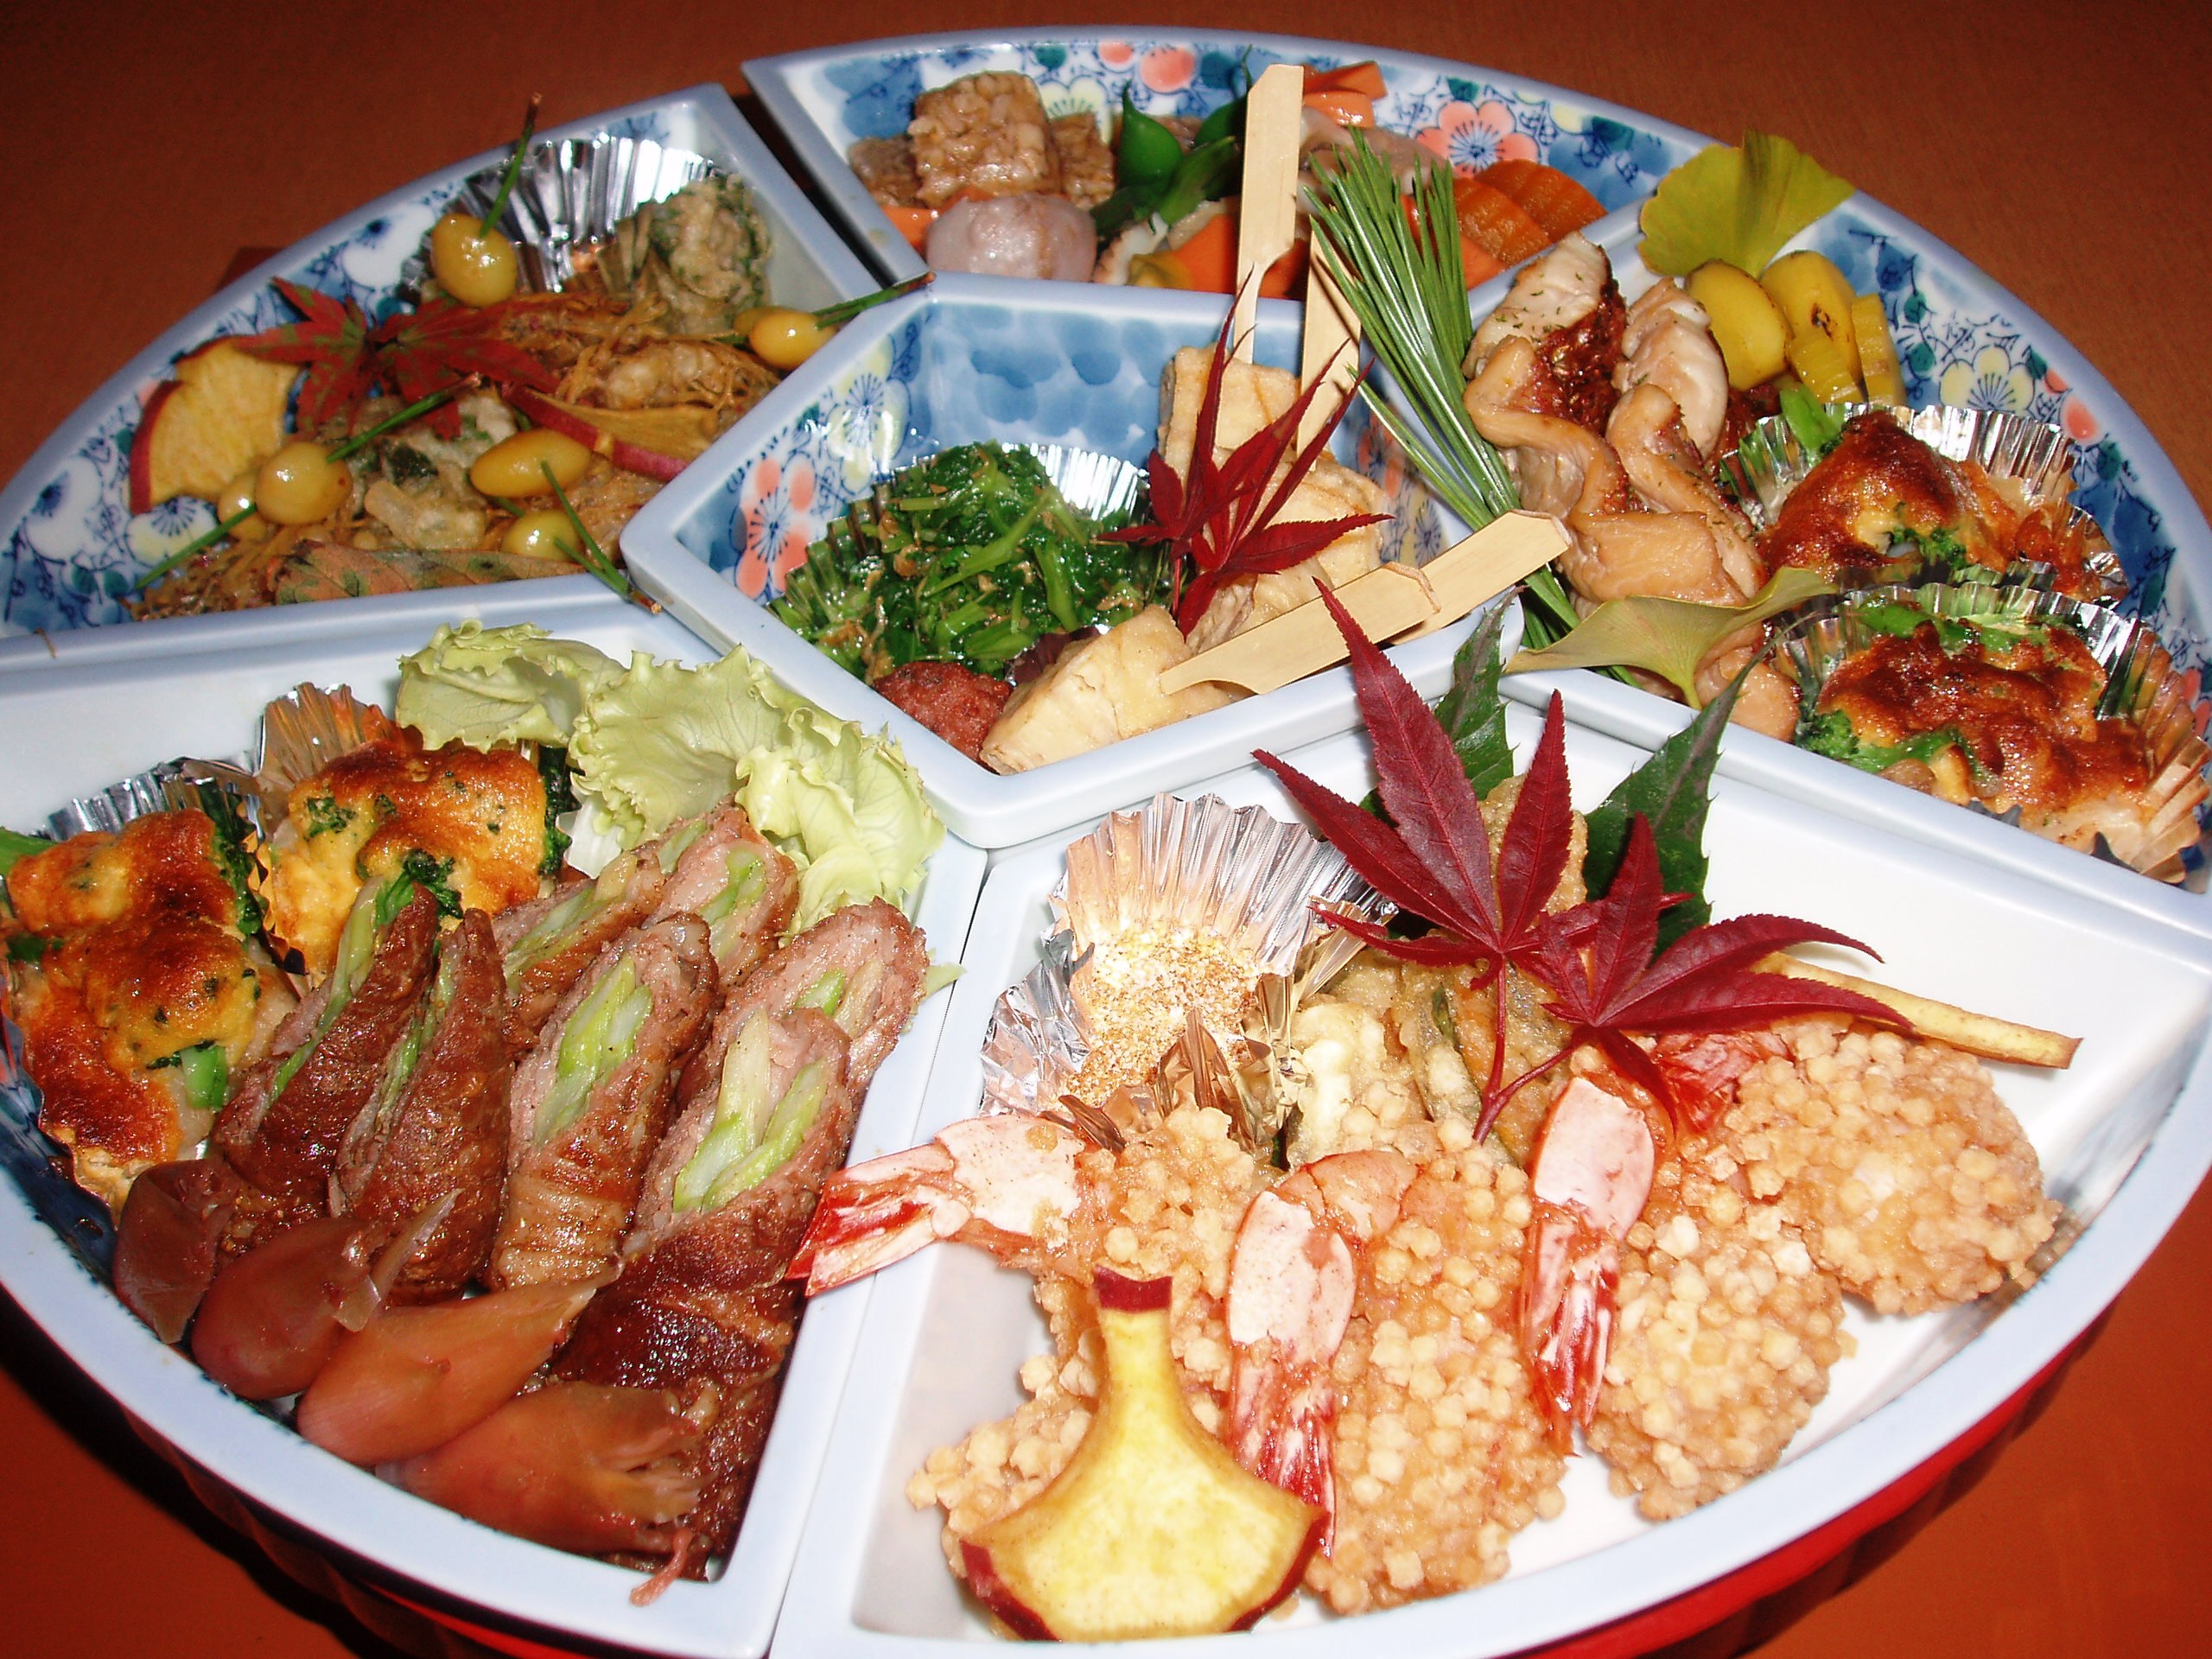 ご家庭の食卓でも喜久屋のお料理を楽しめます。